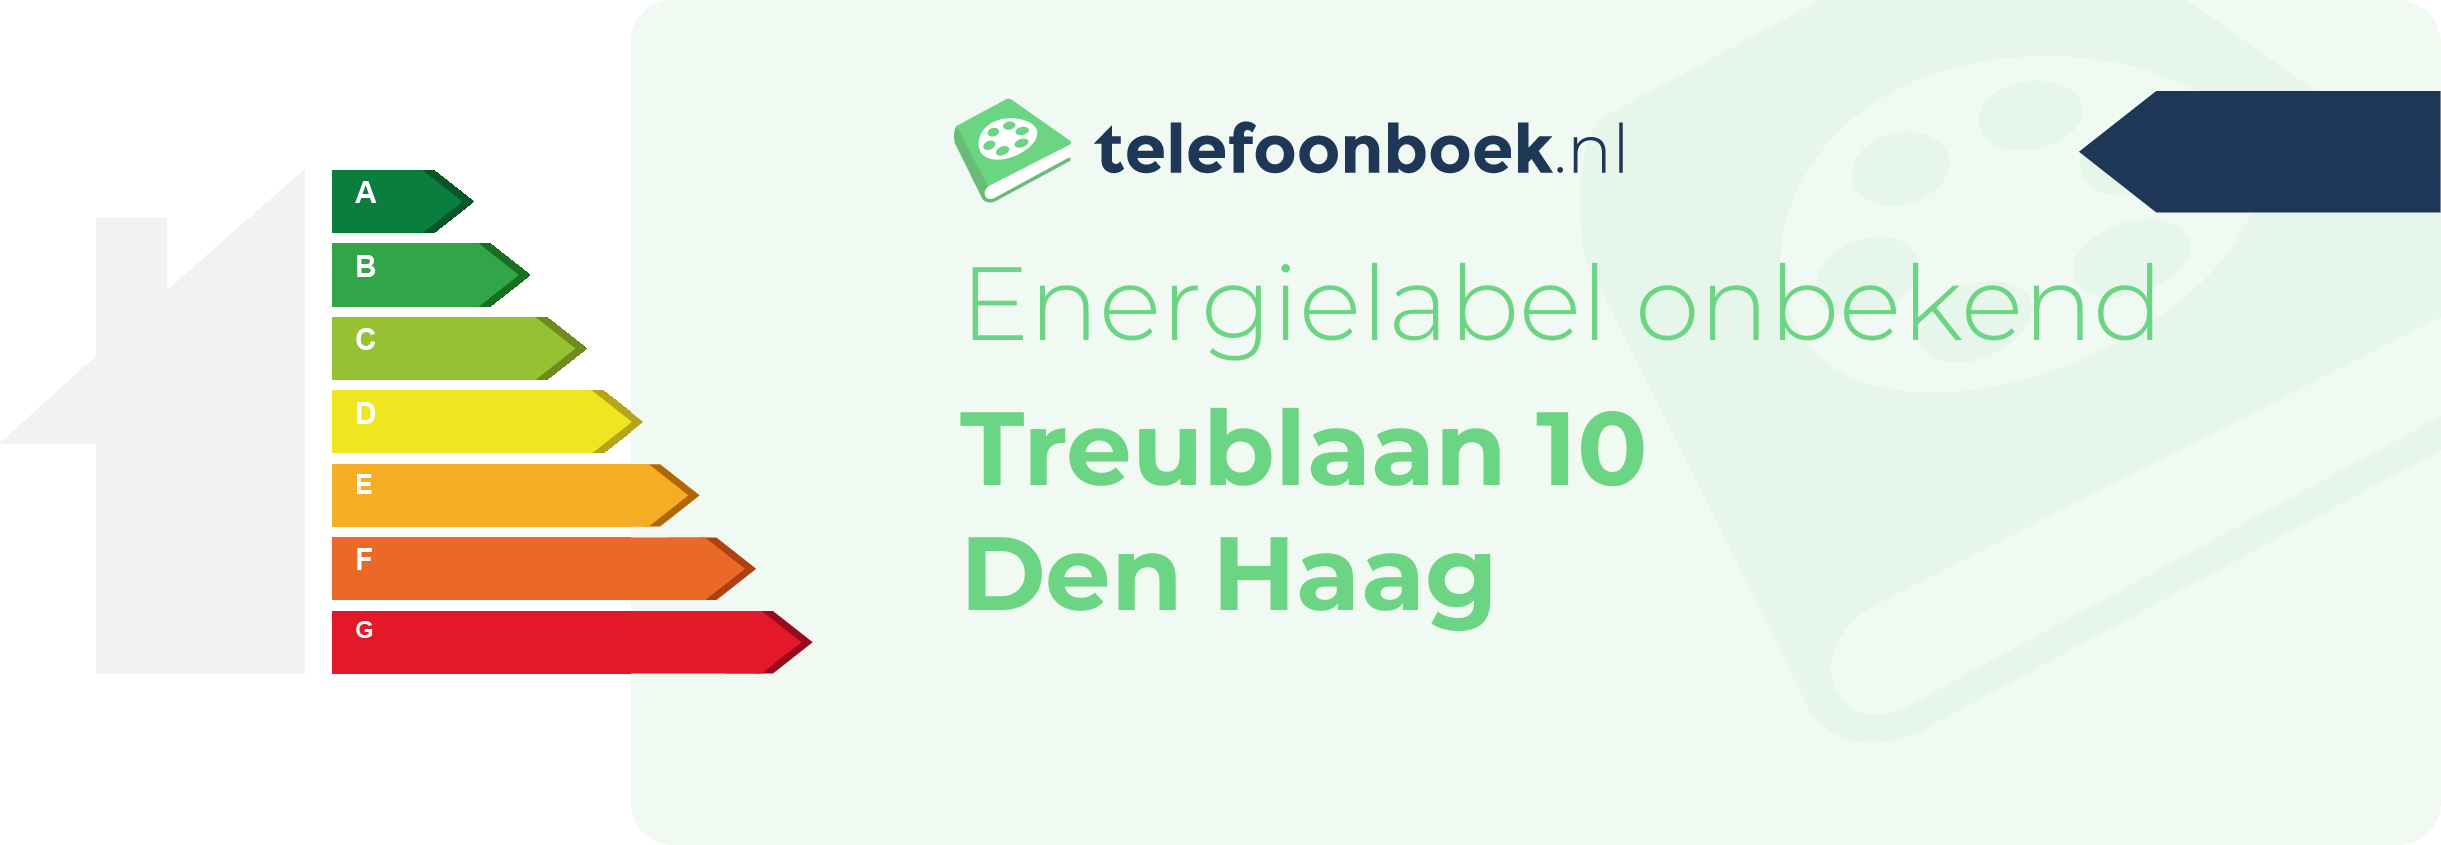 Energielabel Treublaan 10 Den Haag